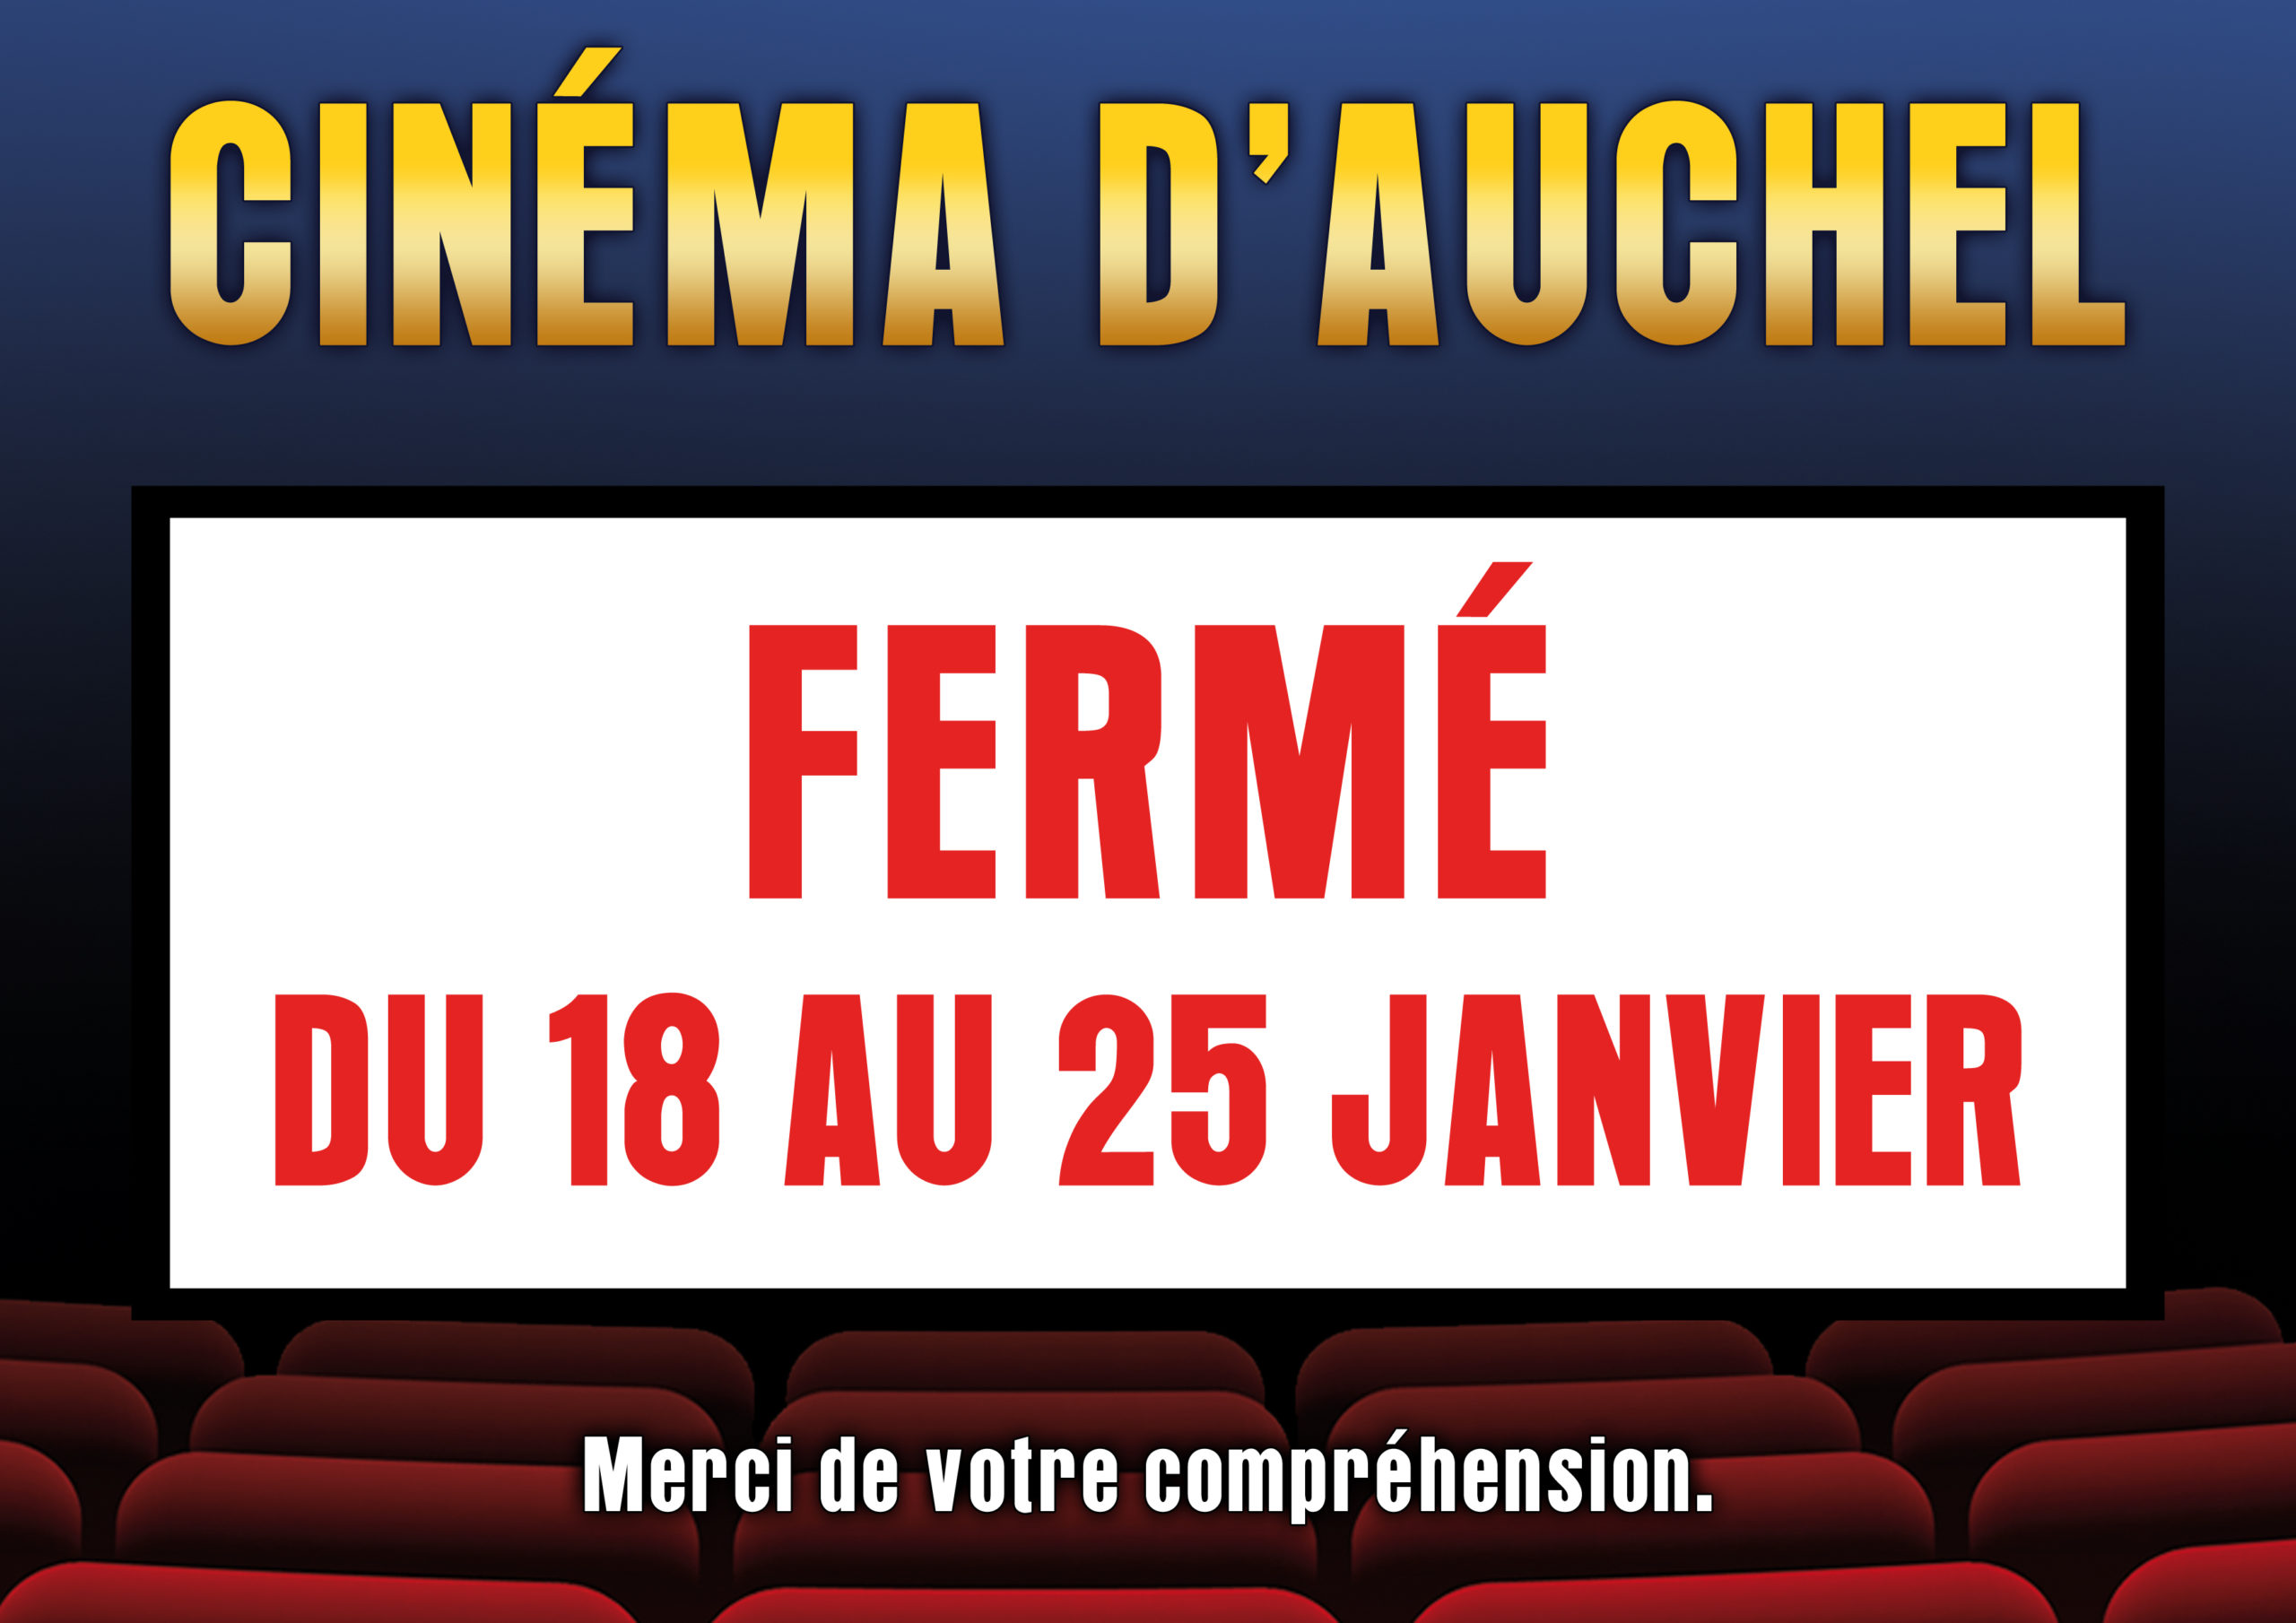 Cinéma d’Auchel fermé